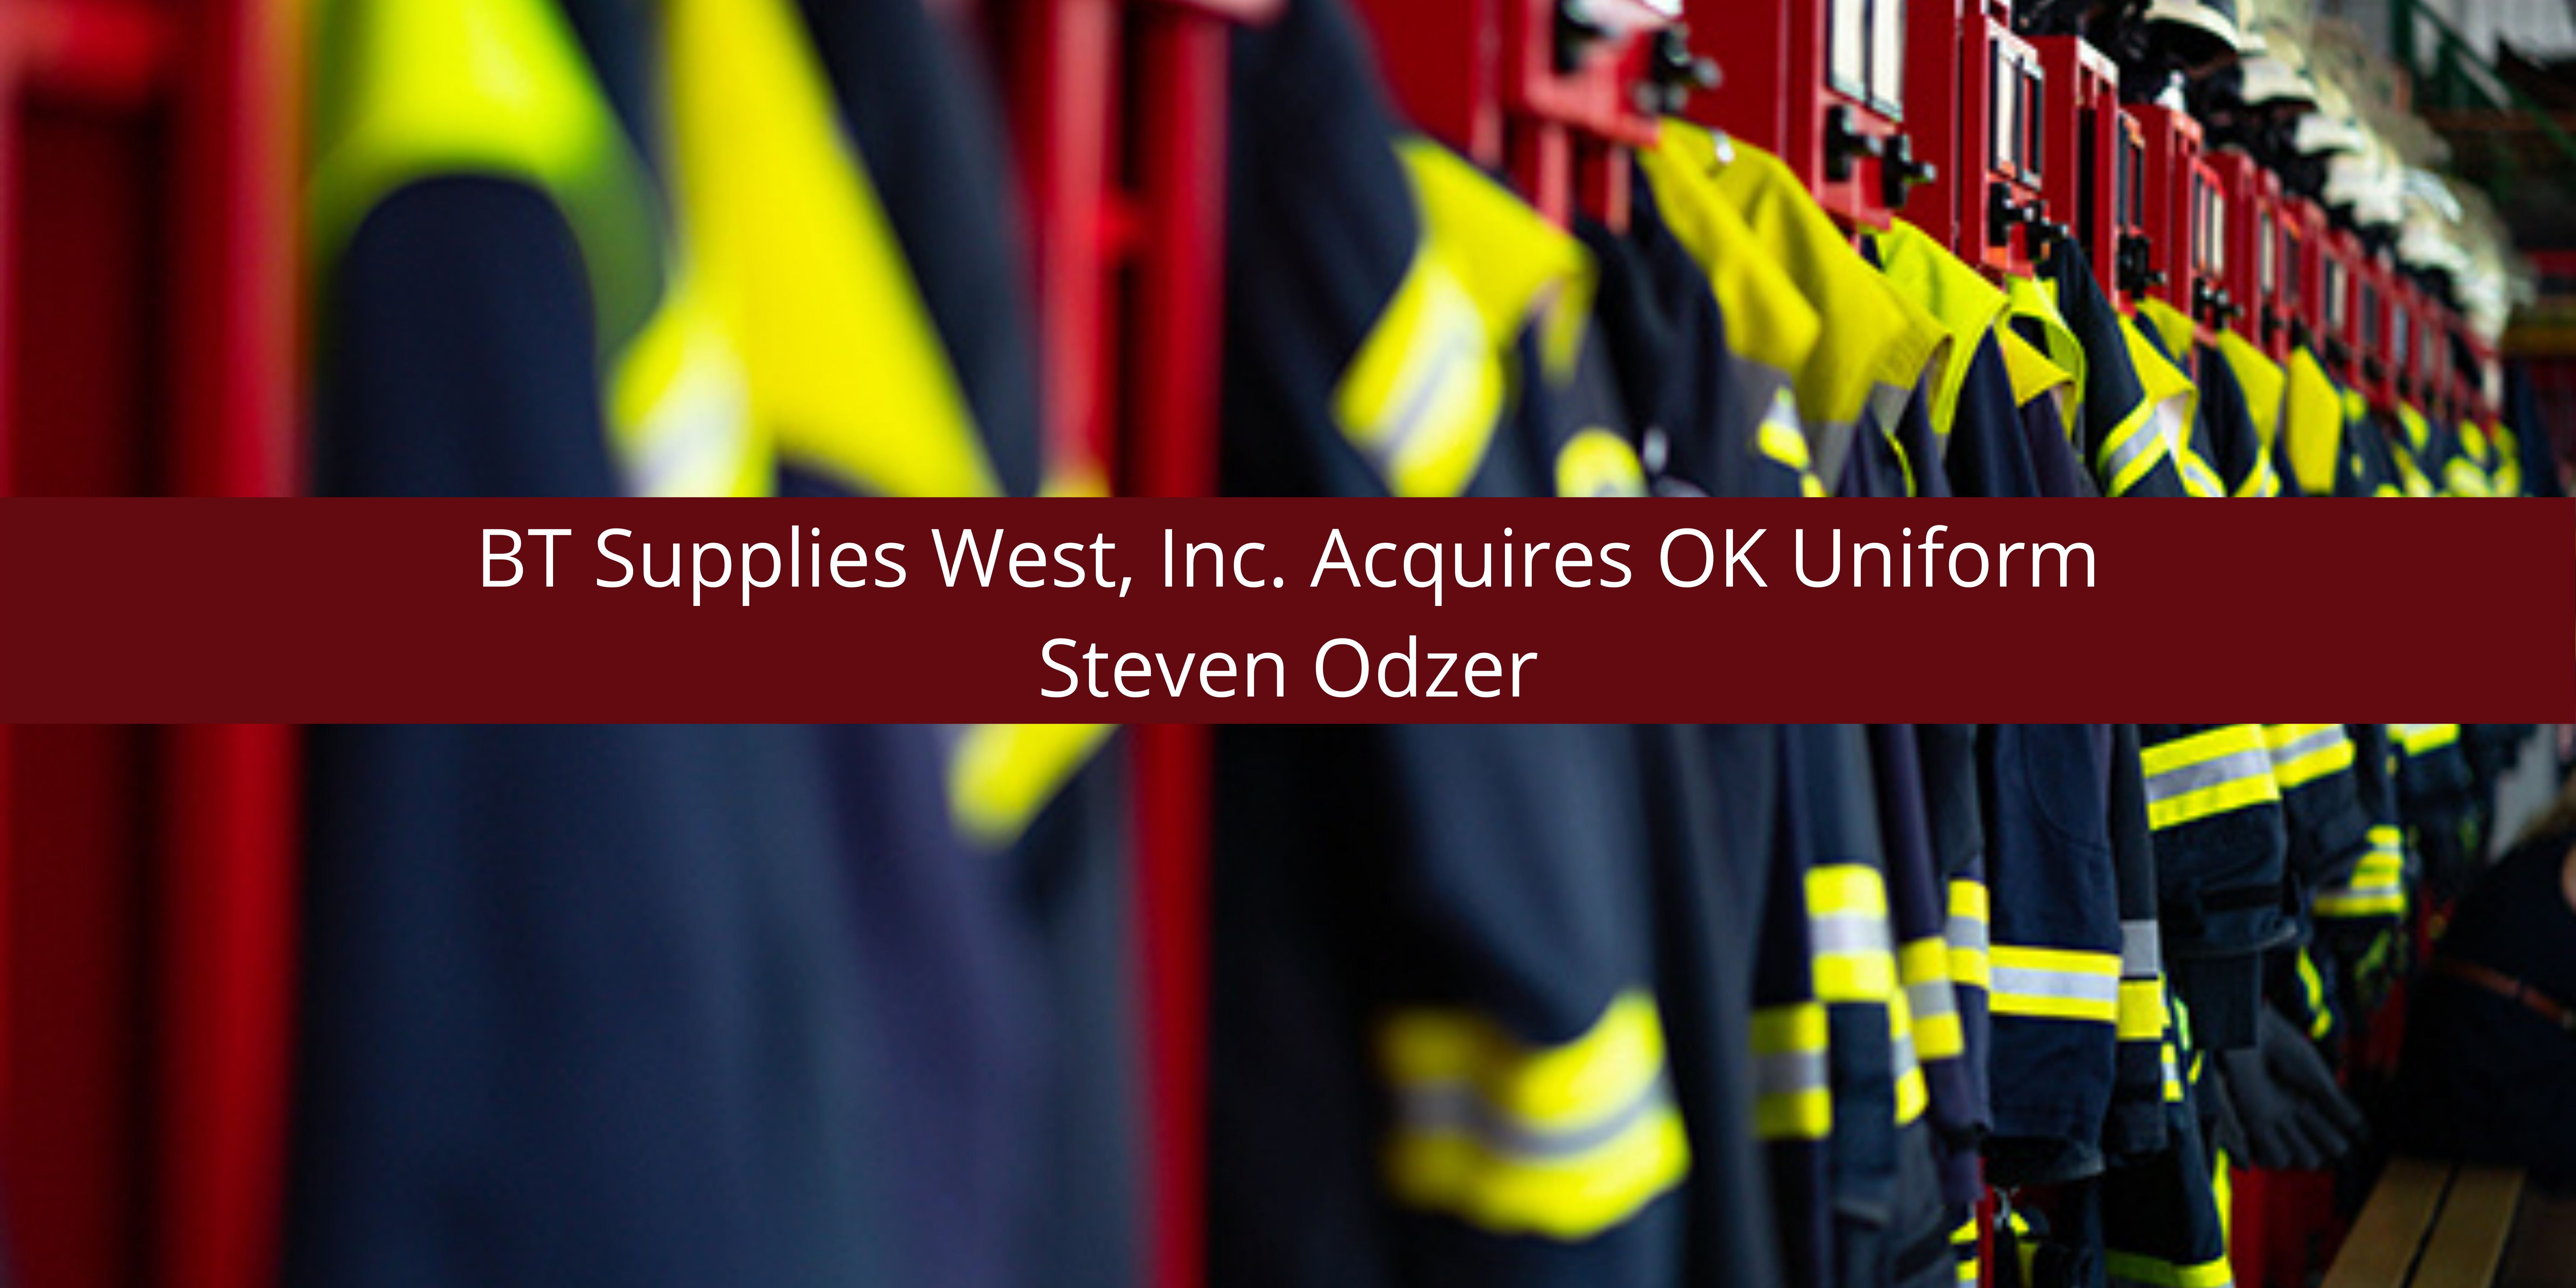 Steven Odzer Announces BT Supplies West, Inc. Acquires OK Uniform